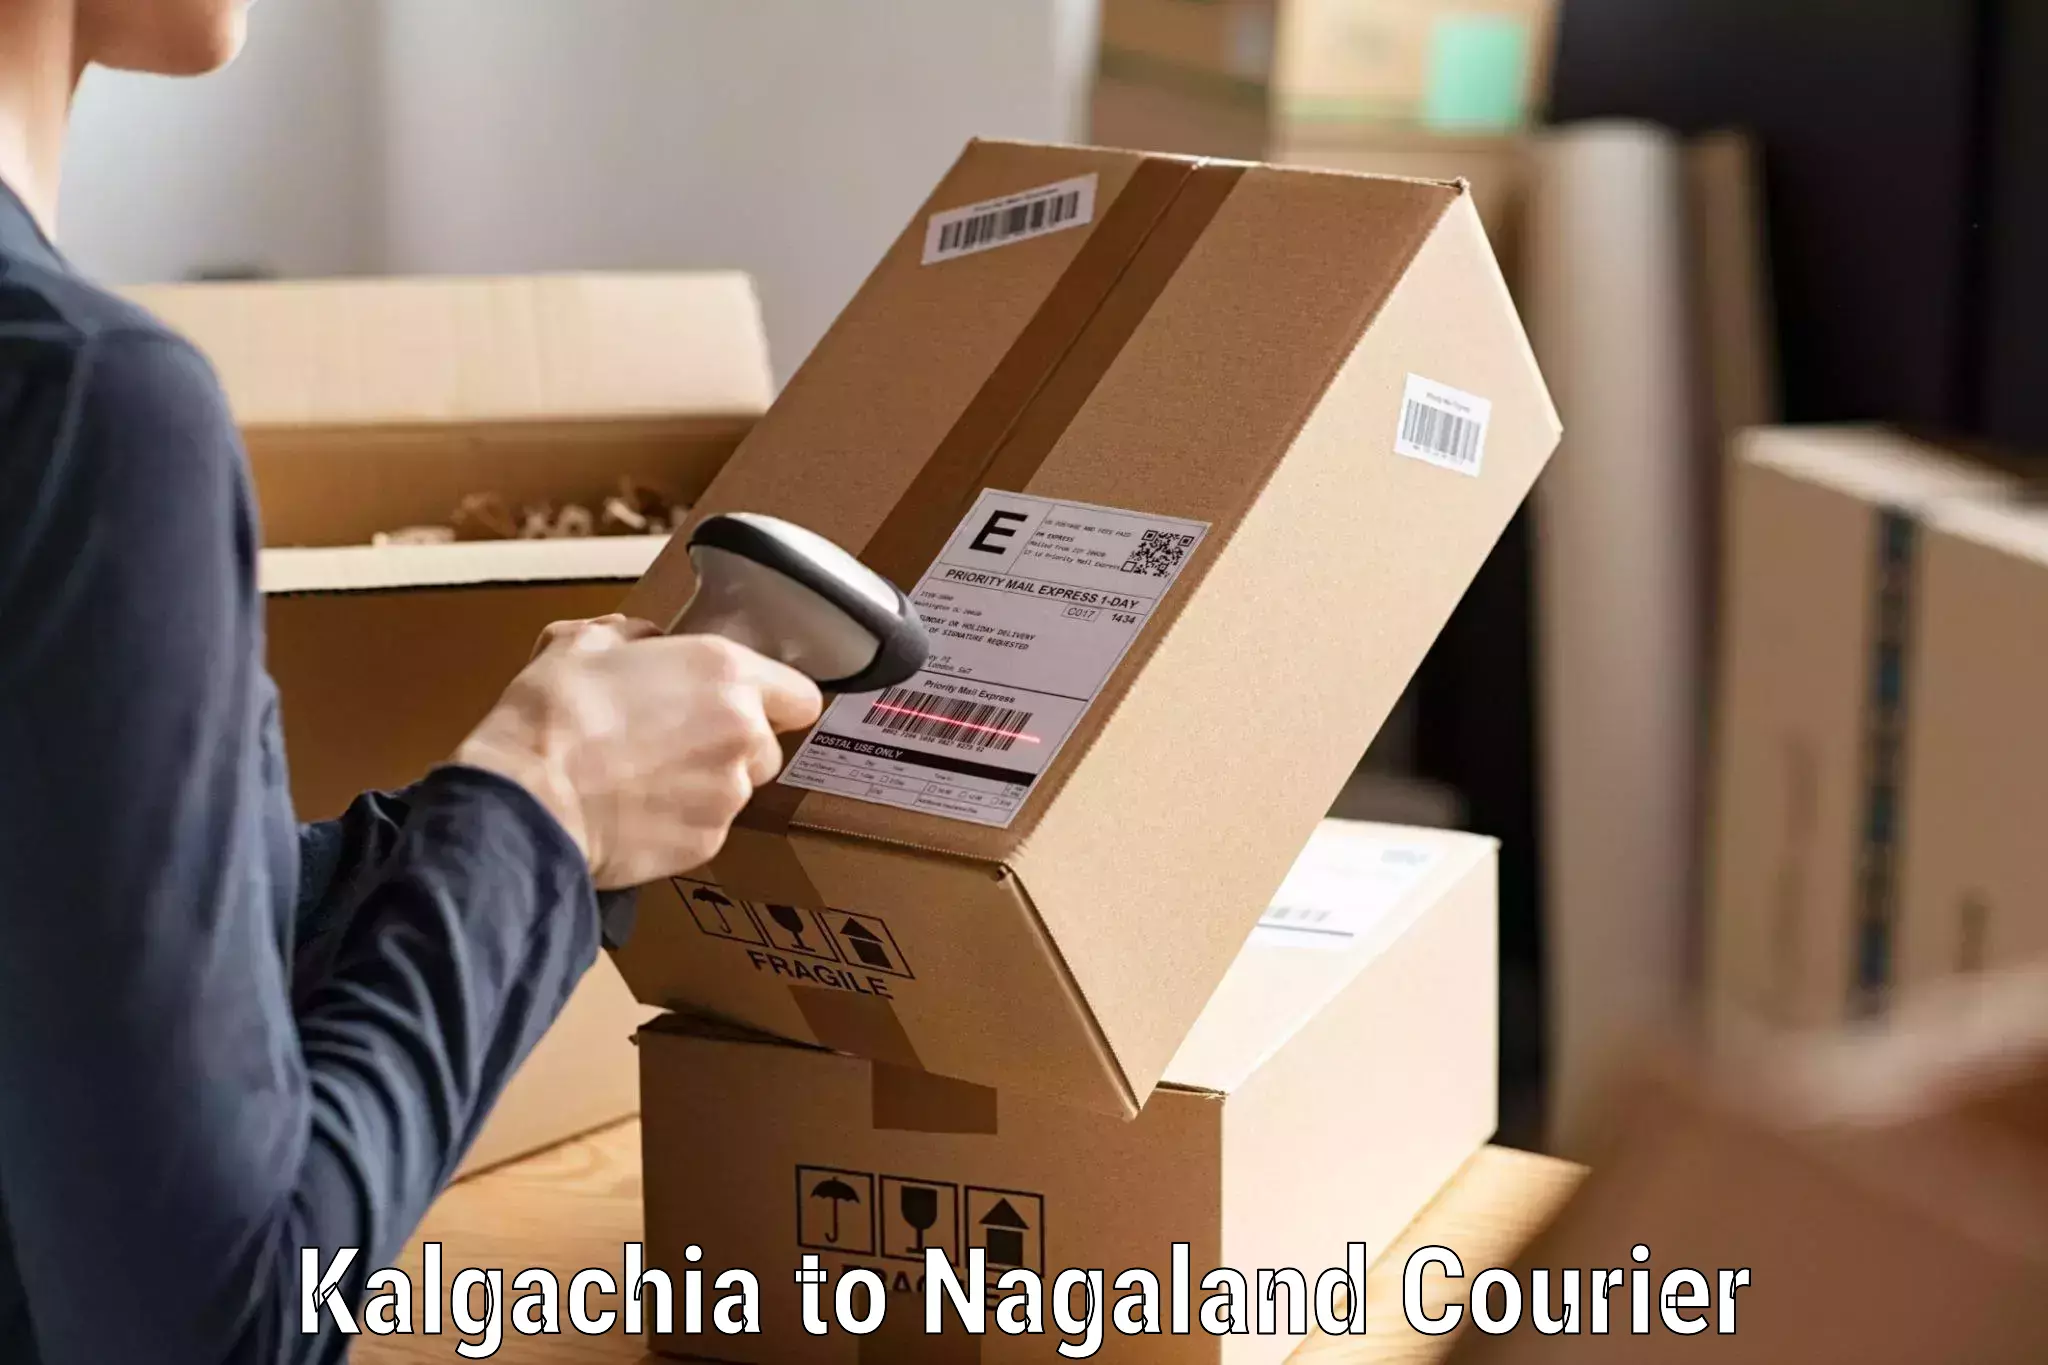 User-friendly courier app Kalgachia to Nagaland